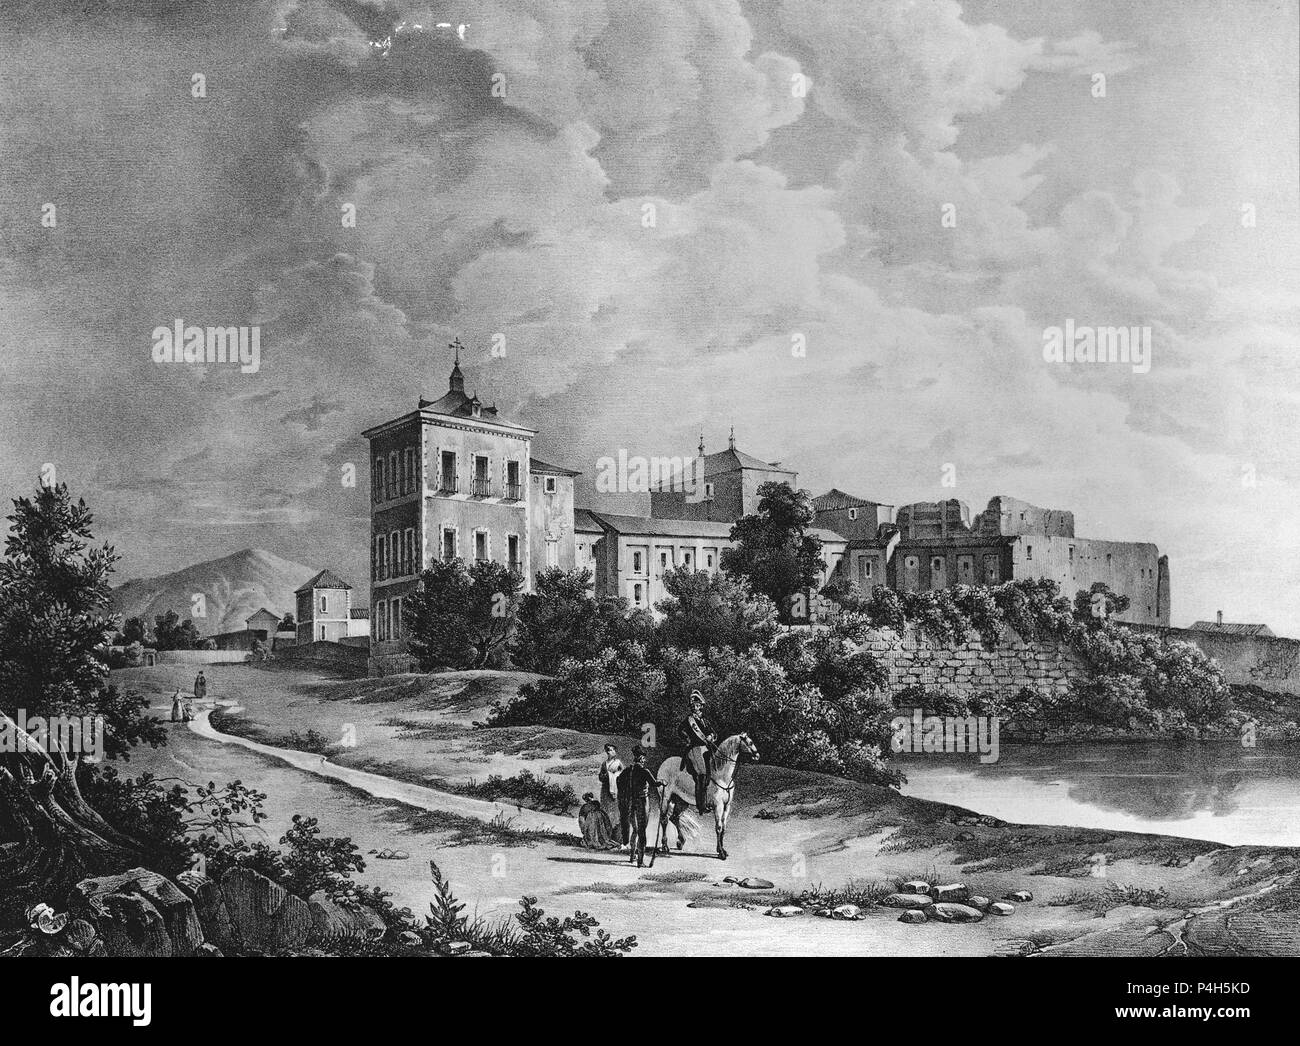 VISTA GENERAL DEL REAL PALACIO DE VALSAIN TOMADA DESDE EL MEDIODIA - GRABADO SIGLO XIX. Author: Fernando Brambila (1763-1832). Location: MUSEO ROMANTICO-GRABADO, MADRID, SPAIN. Stock Photo